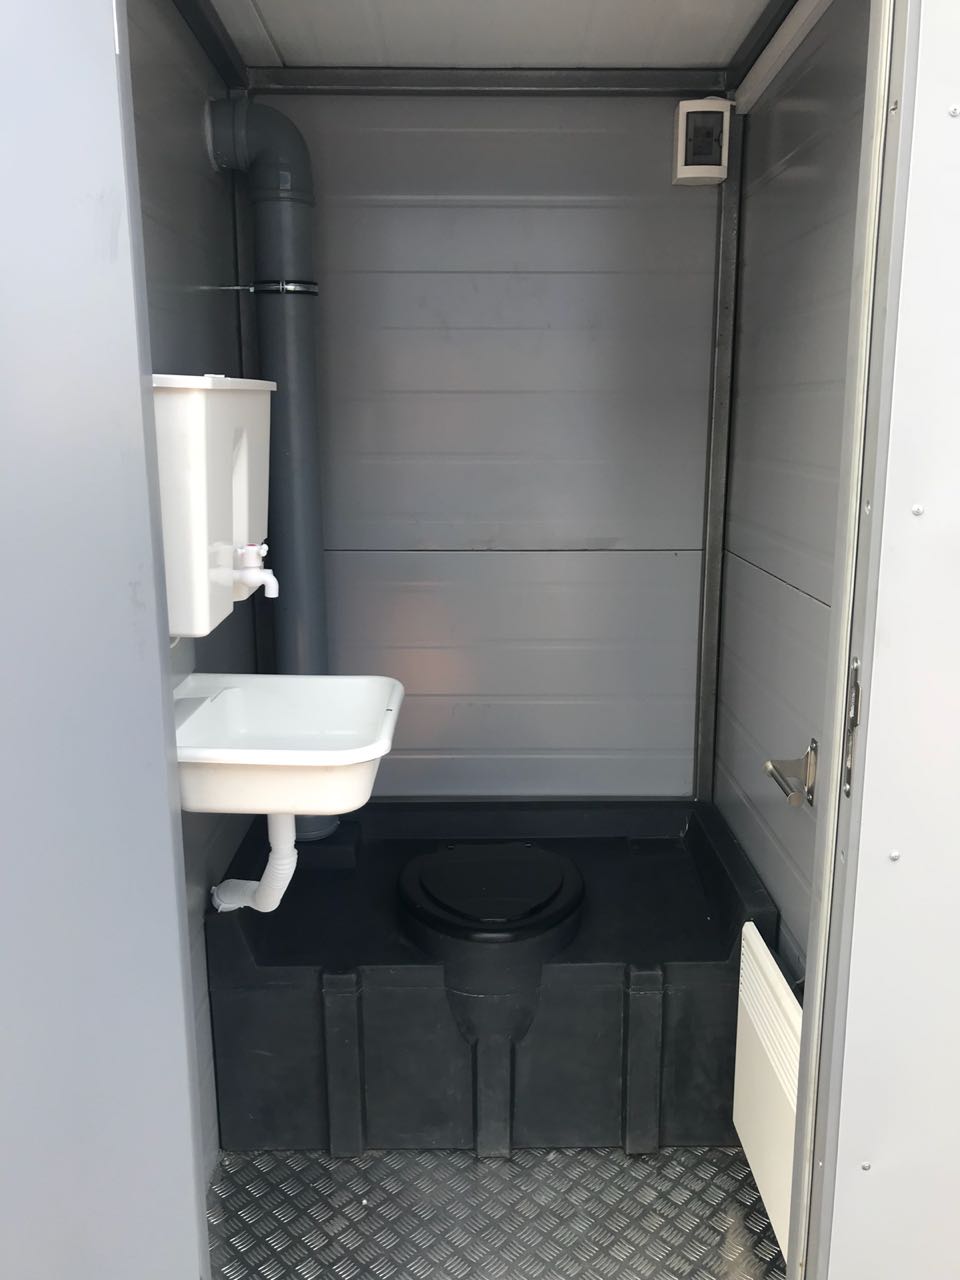 Теплая туалетная кабина ЭКОС-1 (фото 2) в Екатеринбурге